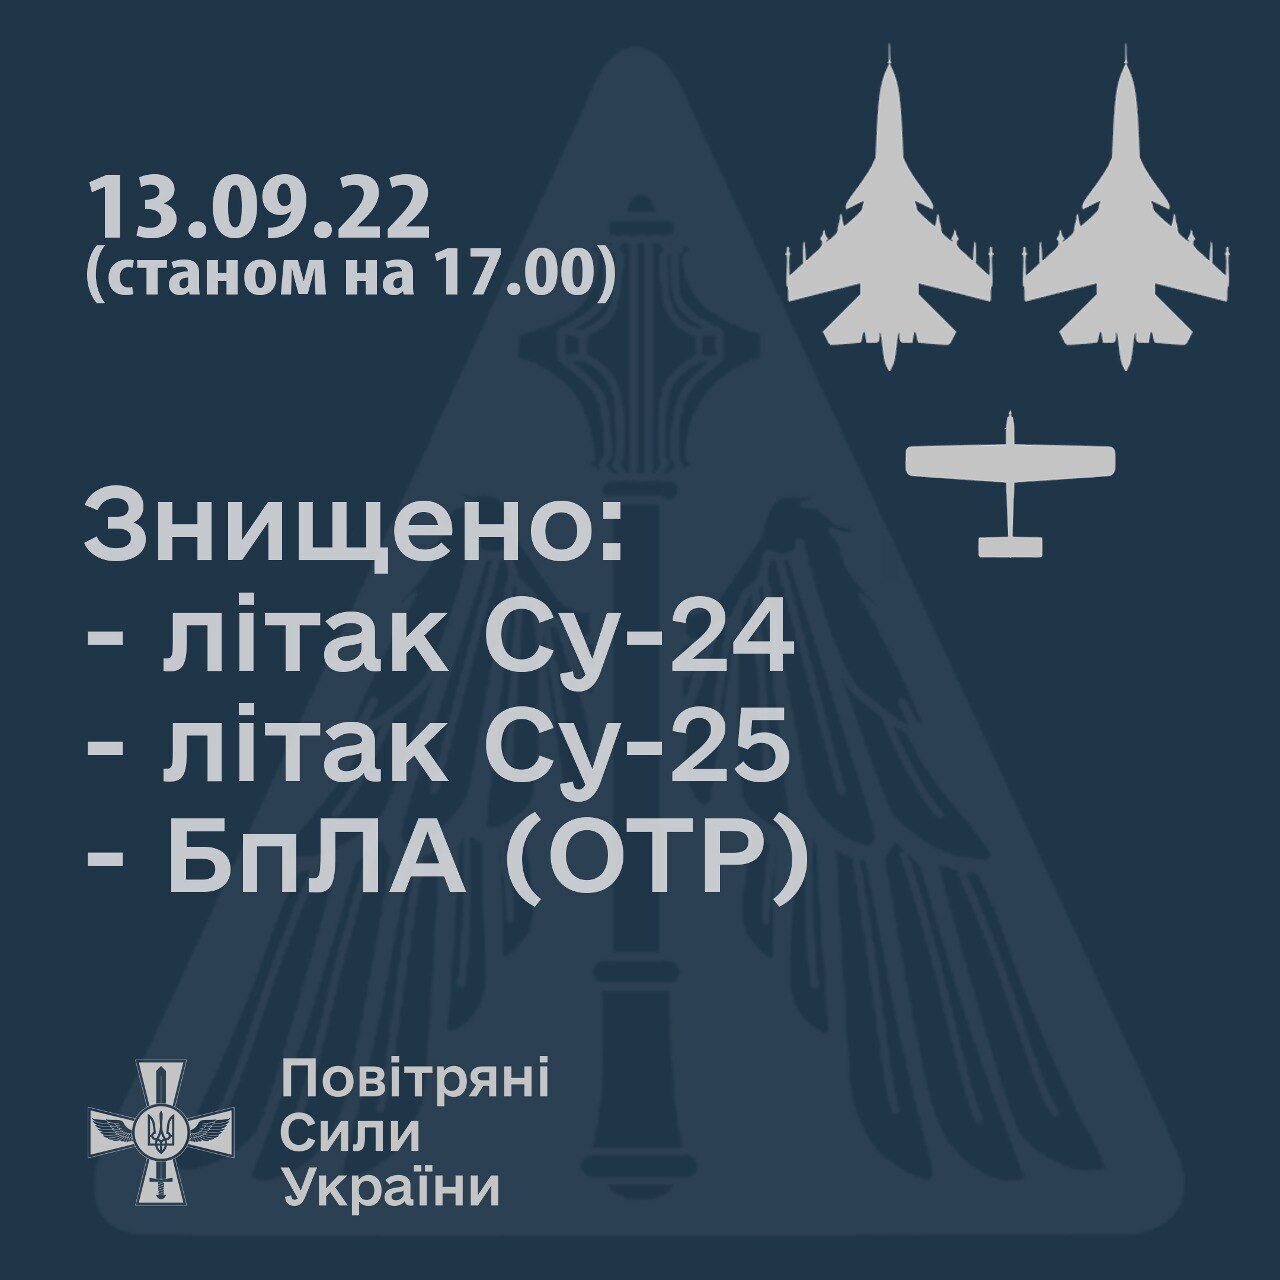 Мінус два ворожі літаки і дрон: у Повітряних силах розповіли про новий успіх українських захисників 